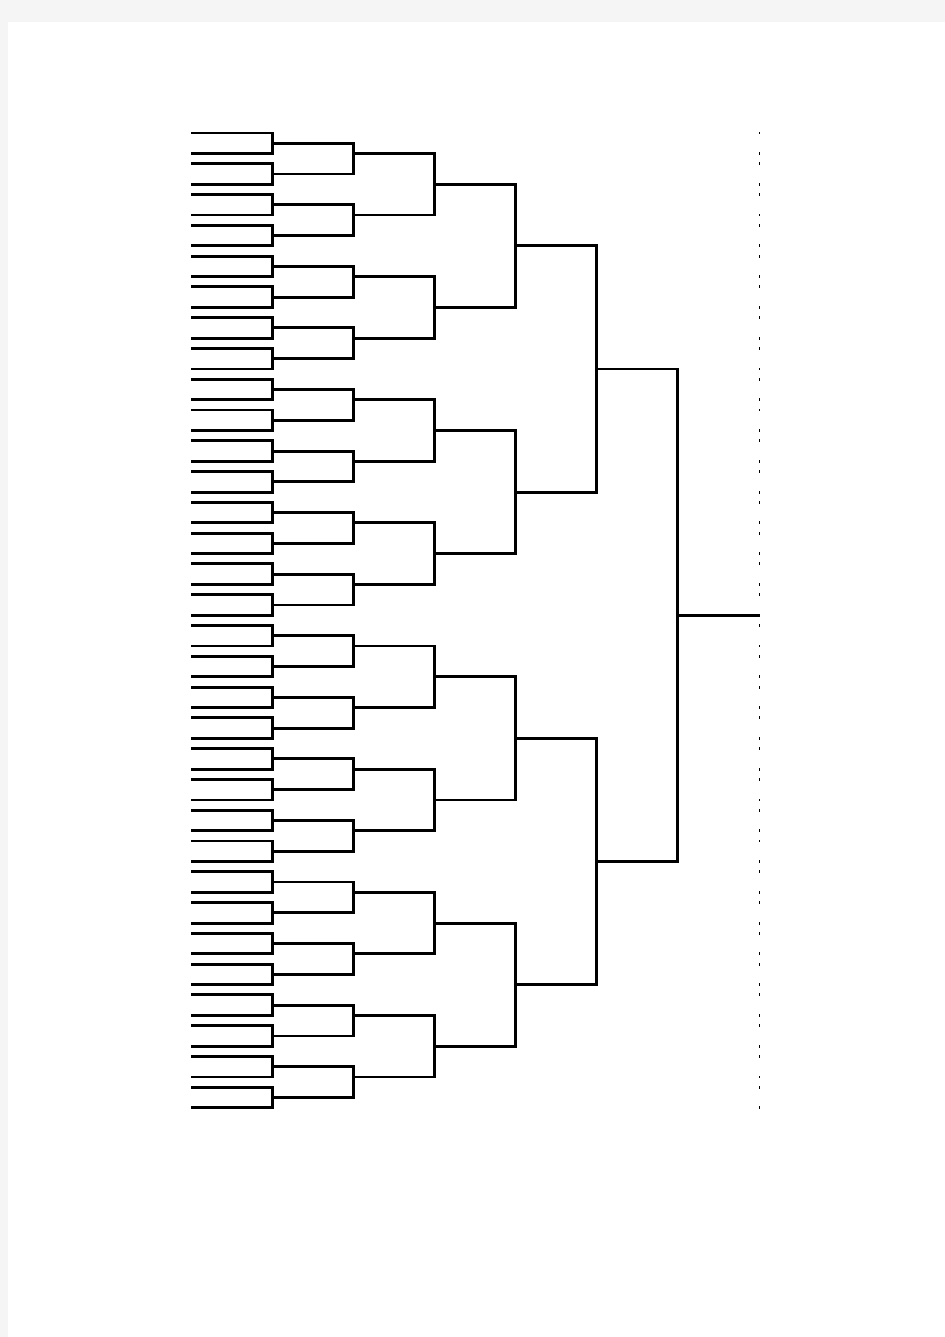 乒乓球比赛分组赛对阵表(8人、16人、32人)